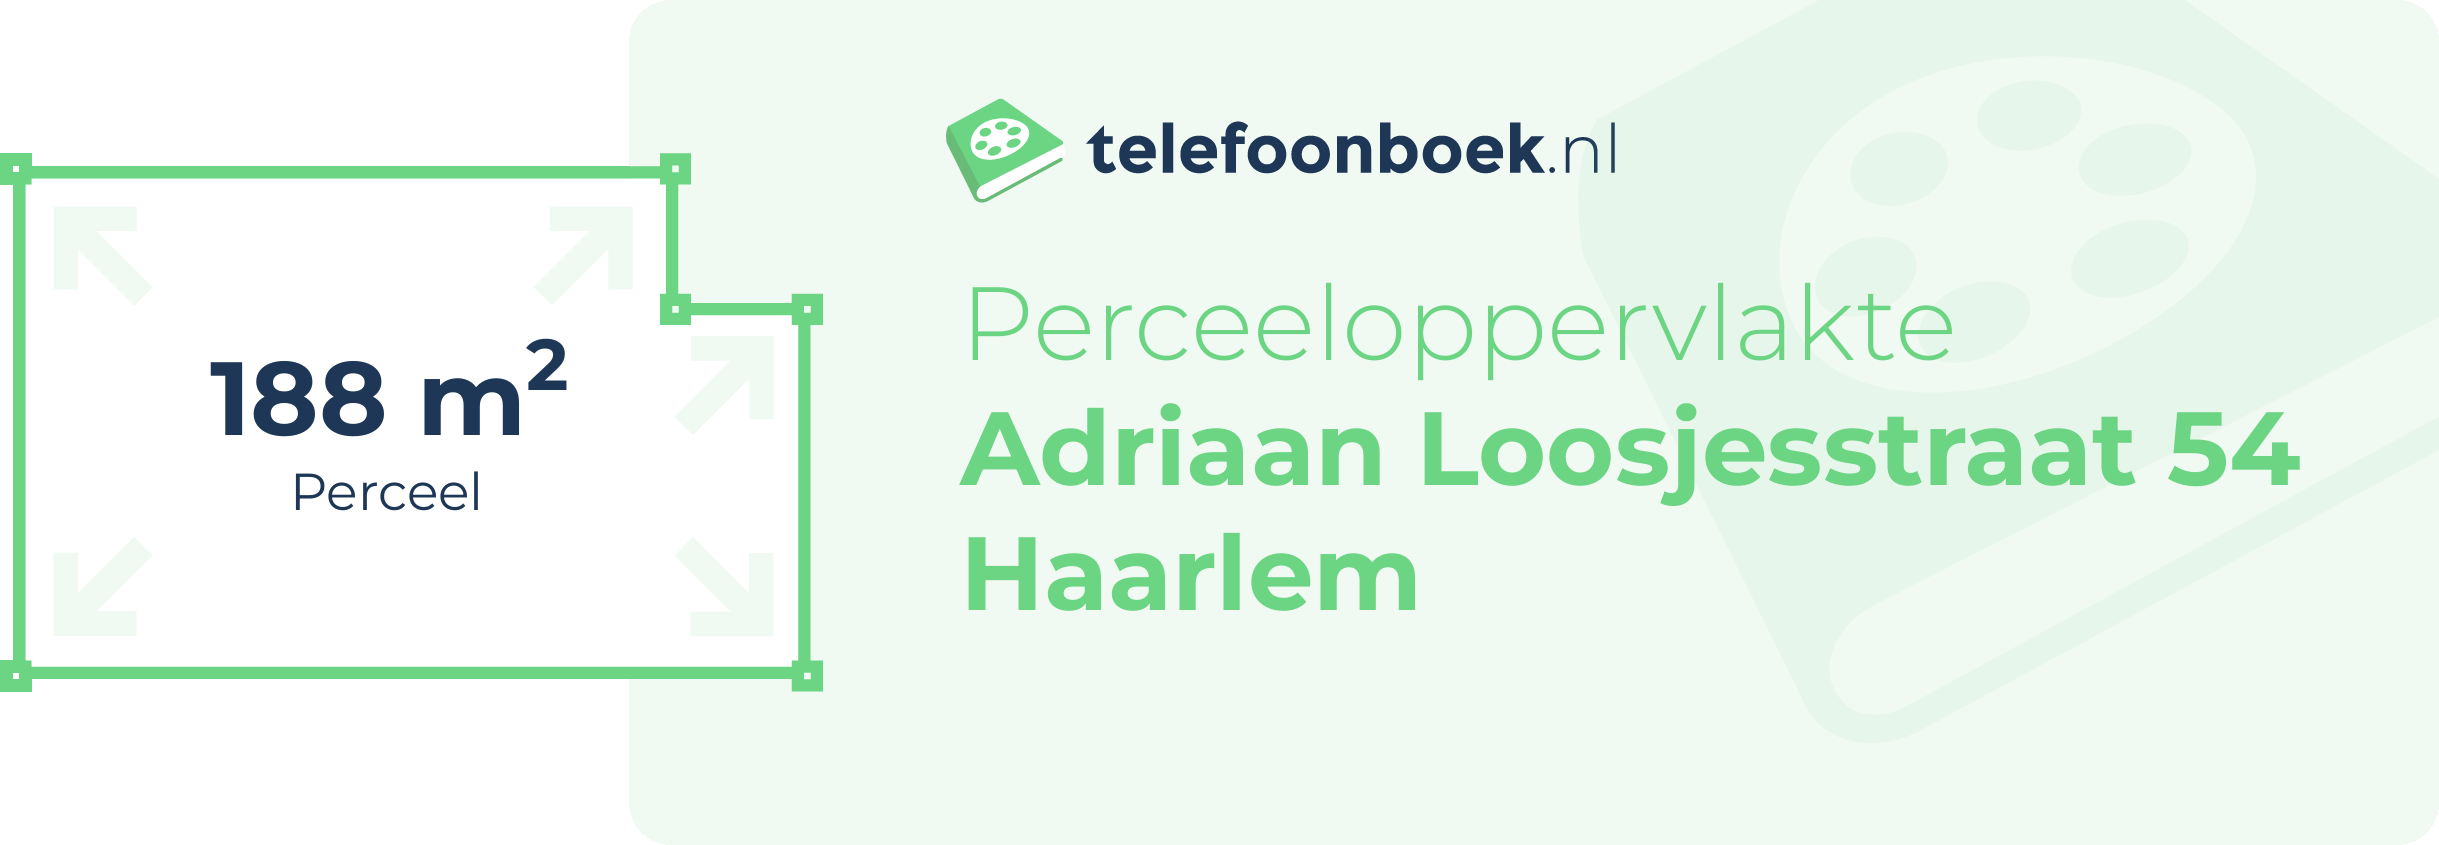 Perceeloppervlakte Adriaan Loosjesstraat 54 Haarlem